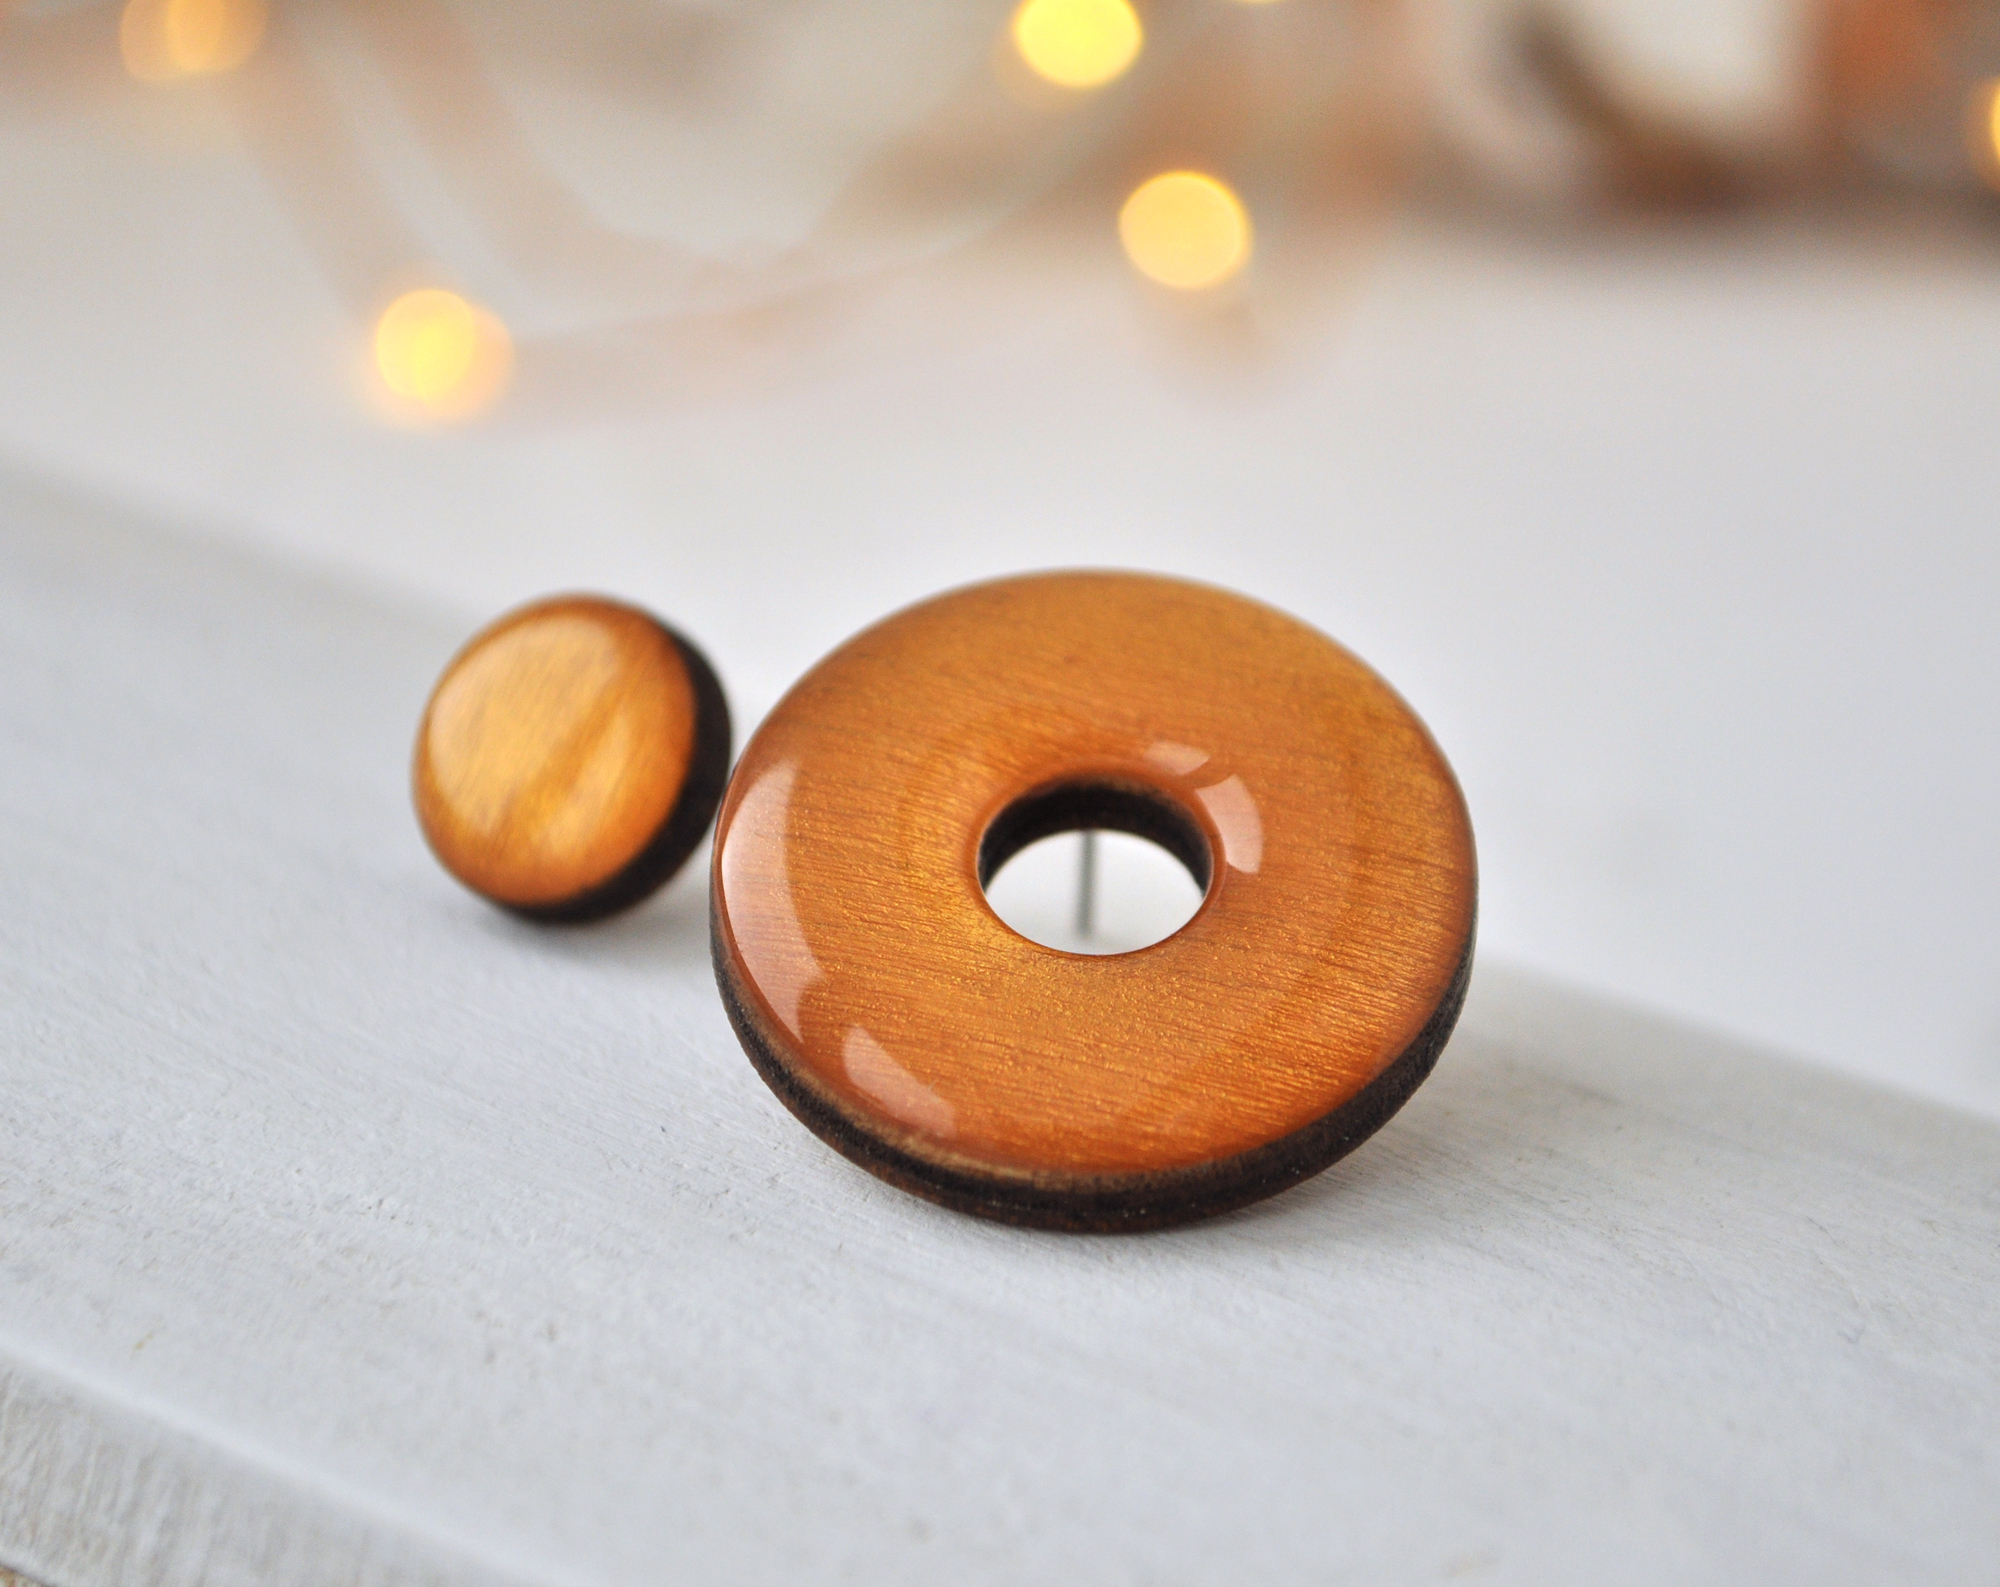 Gold - асимметрия с диском серьги-гвоздики деревянные ручной работы купить